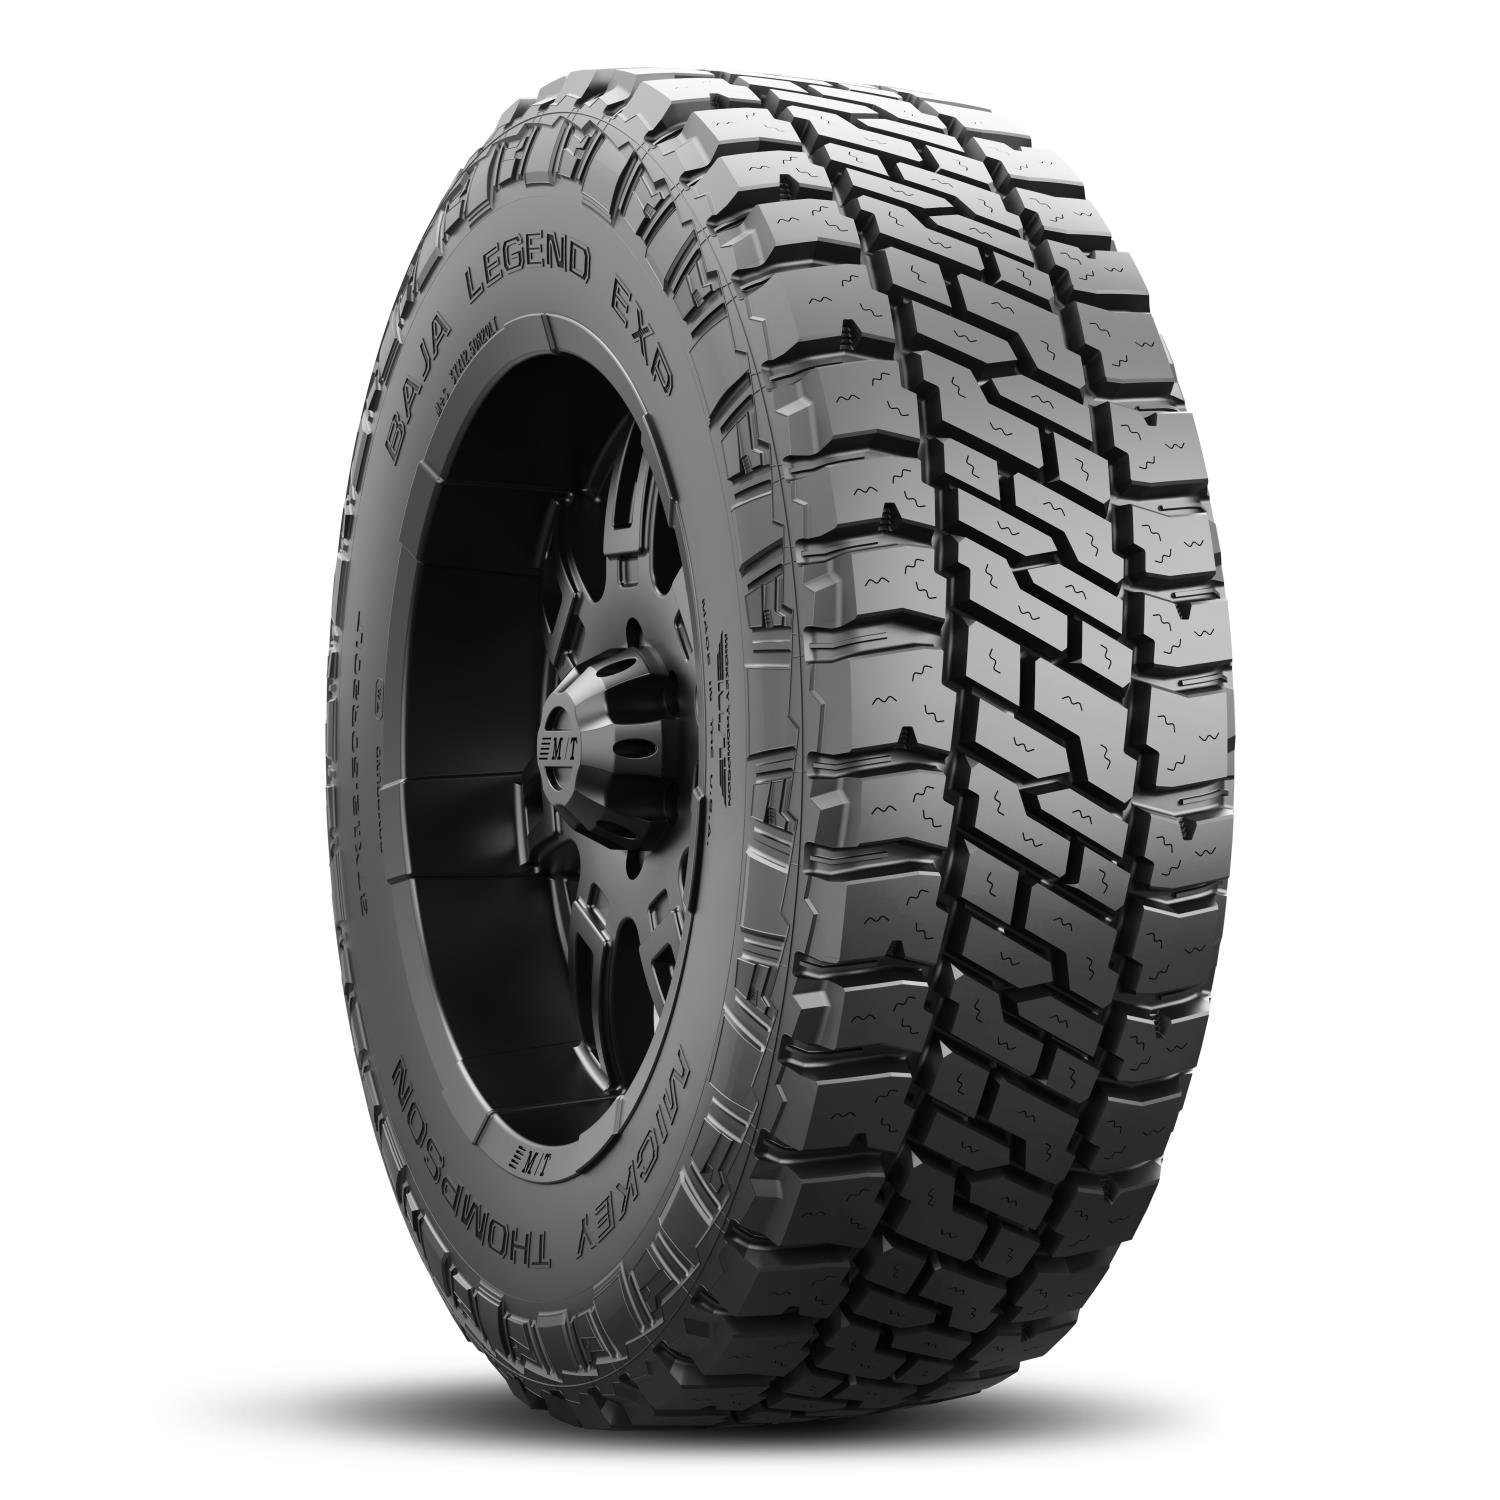 Baja Legend EXP Tire 37X12.50R20LT